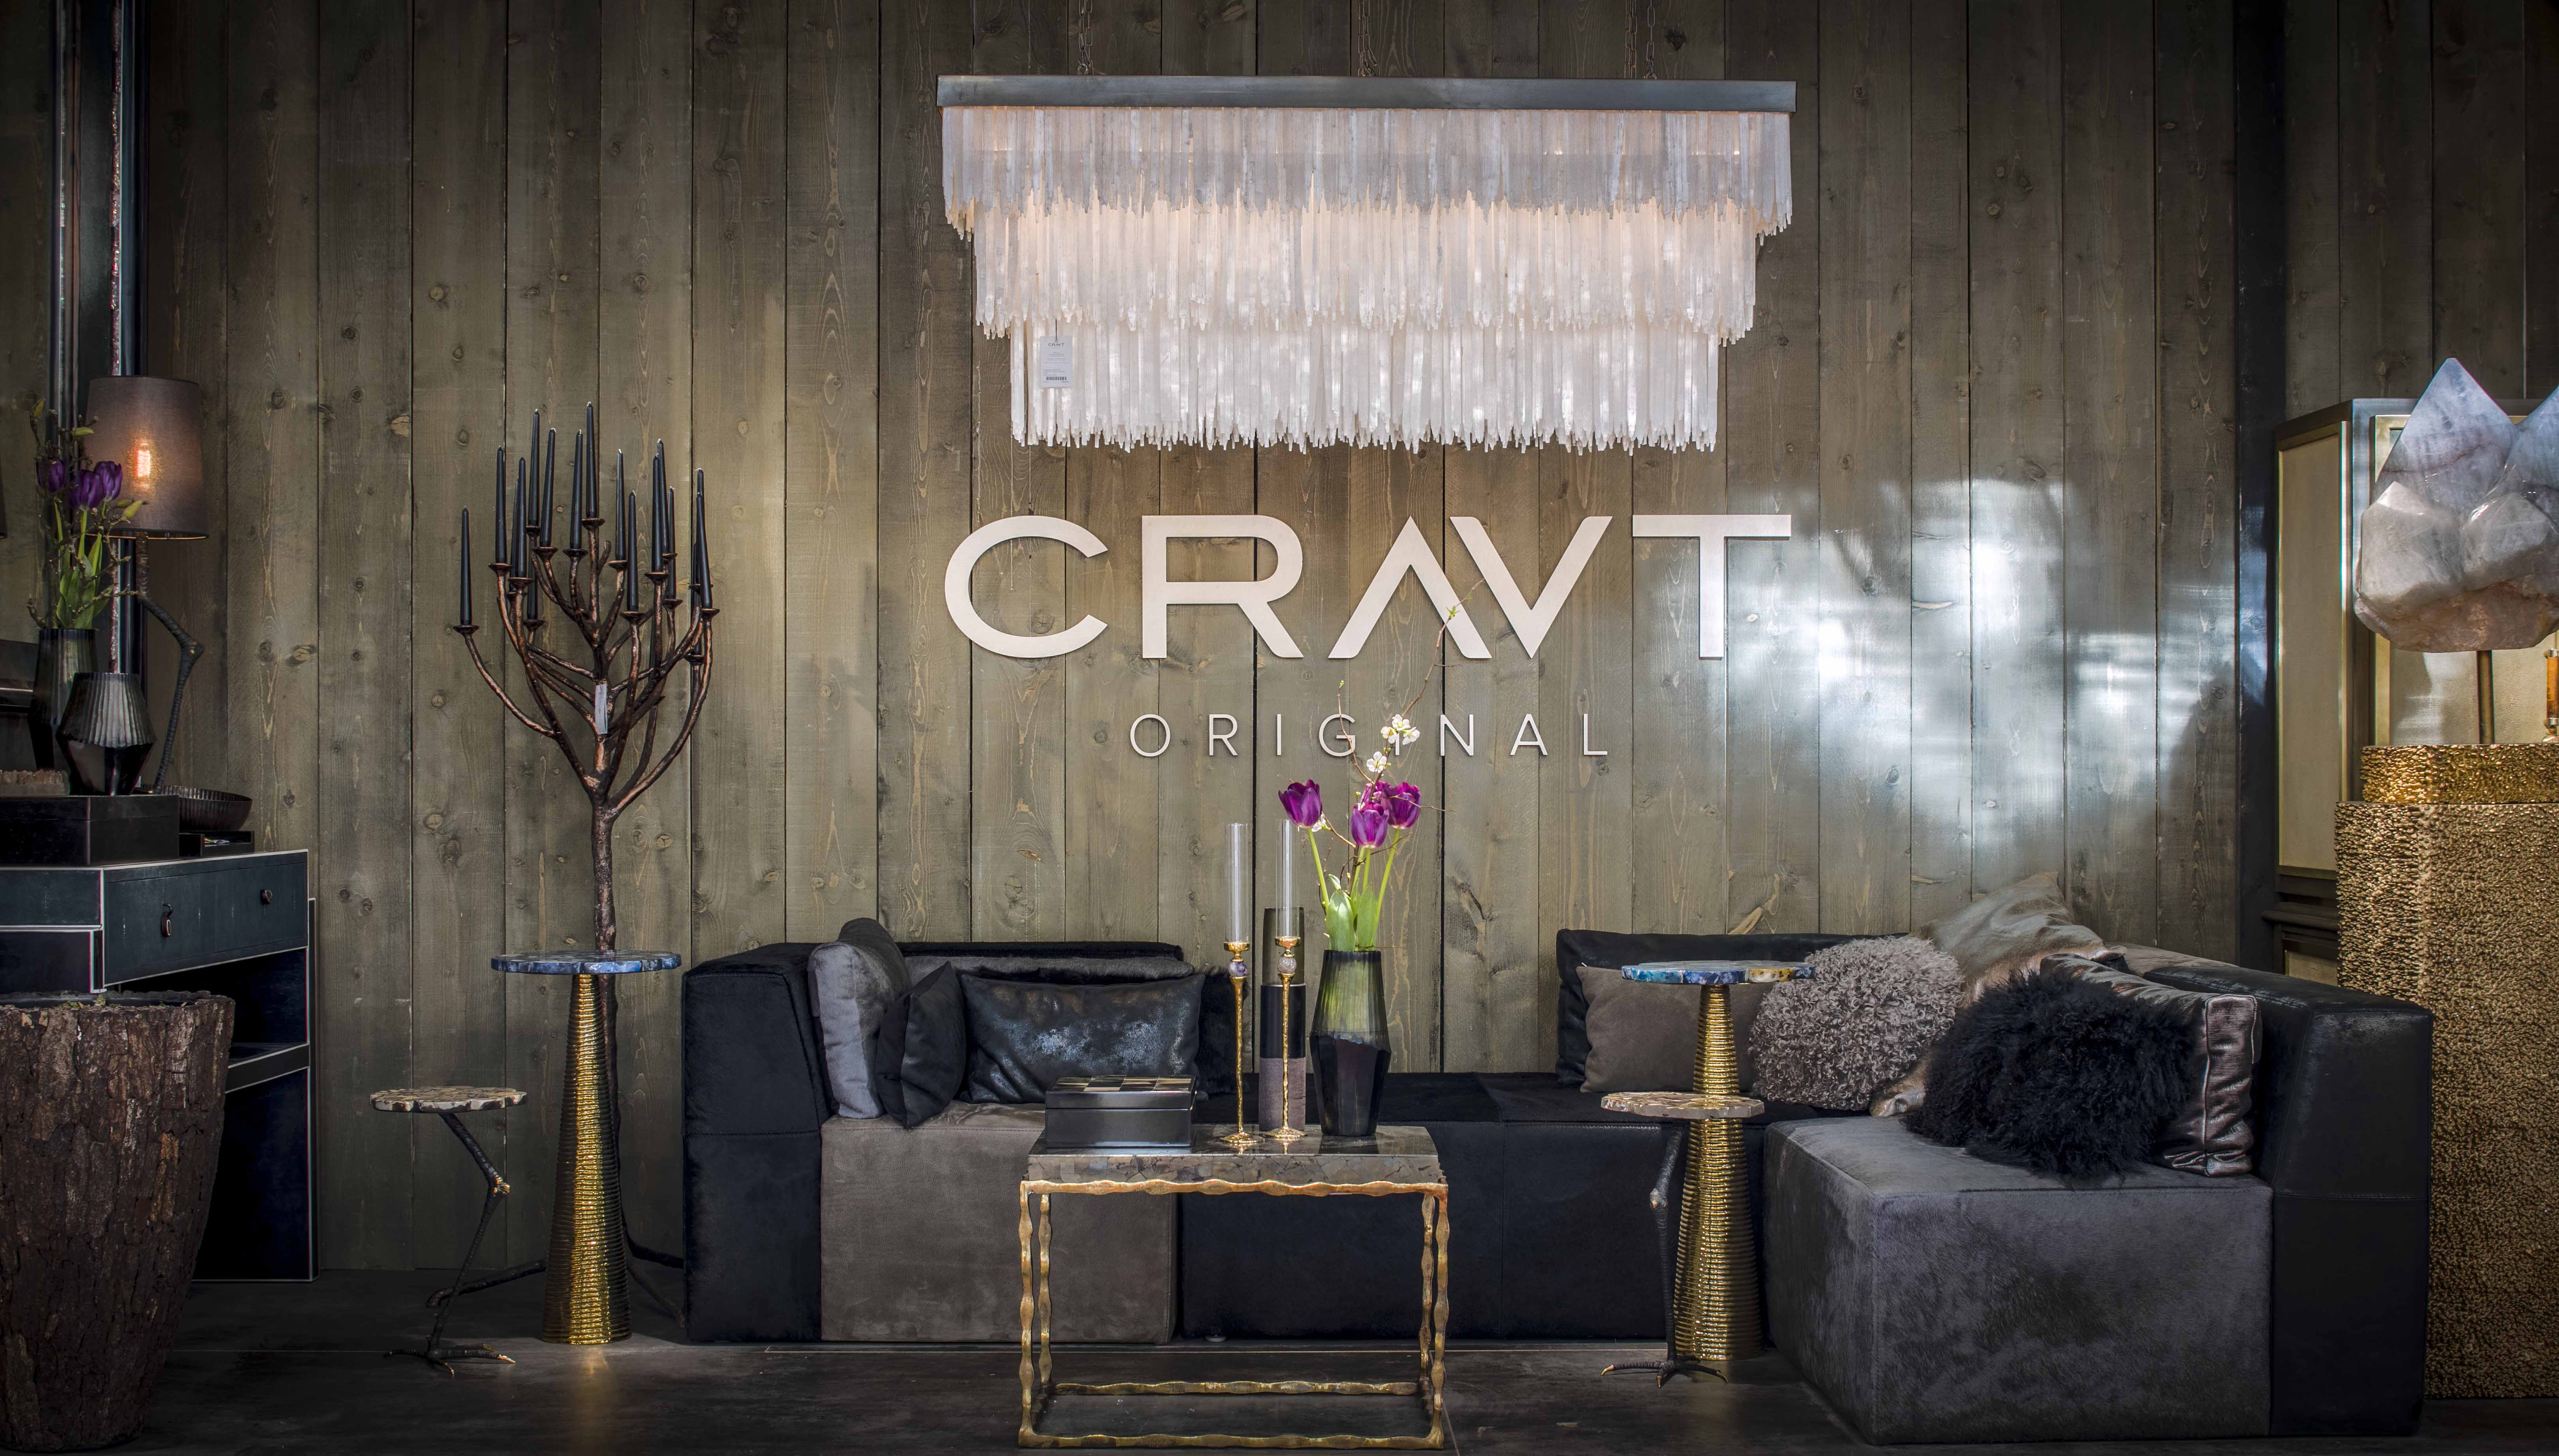 Cravtva proposer les meubles designer de ses collections de luxe aux enchères